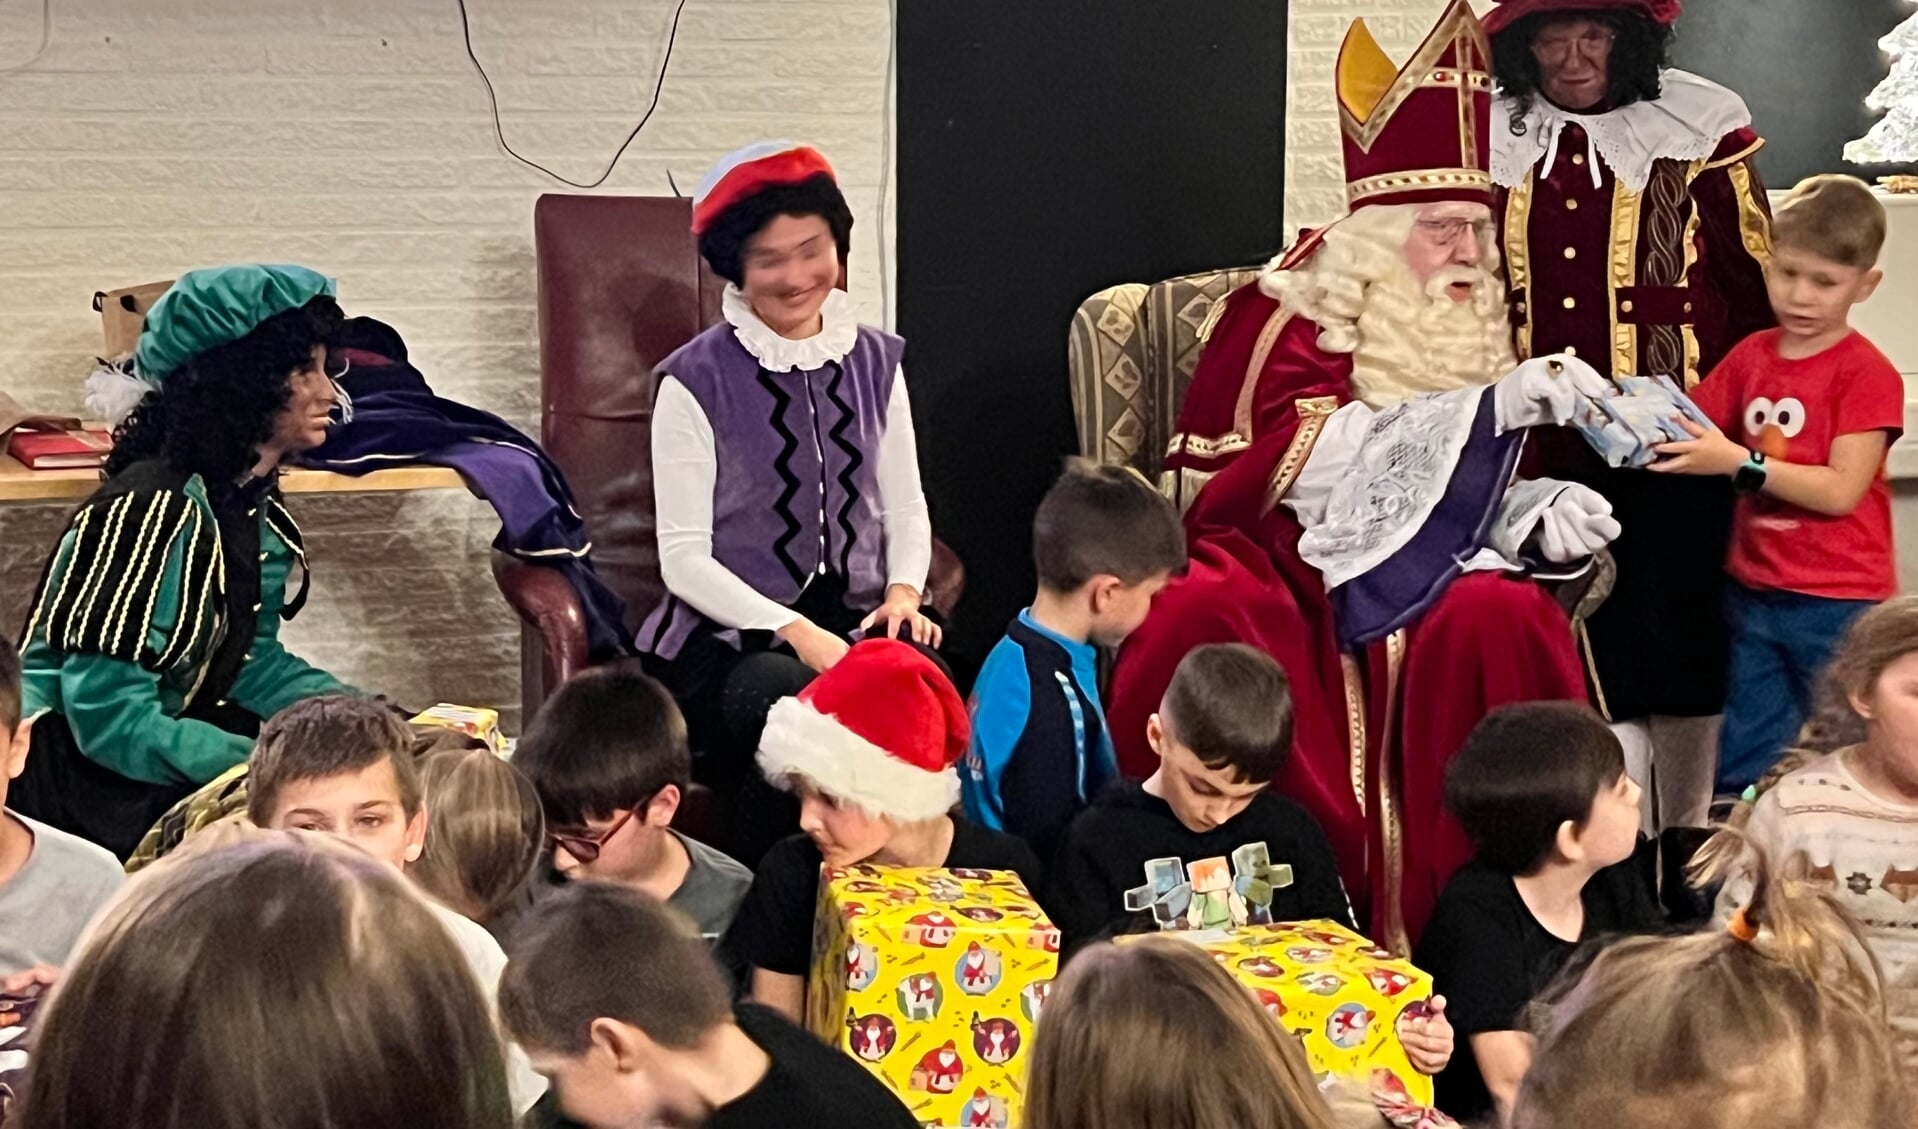 Oekraïne kinderen kregen bezoek van Sinterklaas en de Pieten. Foto: PR WUh